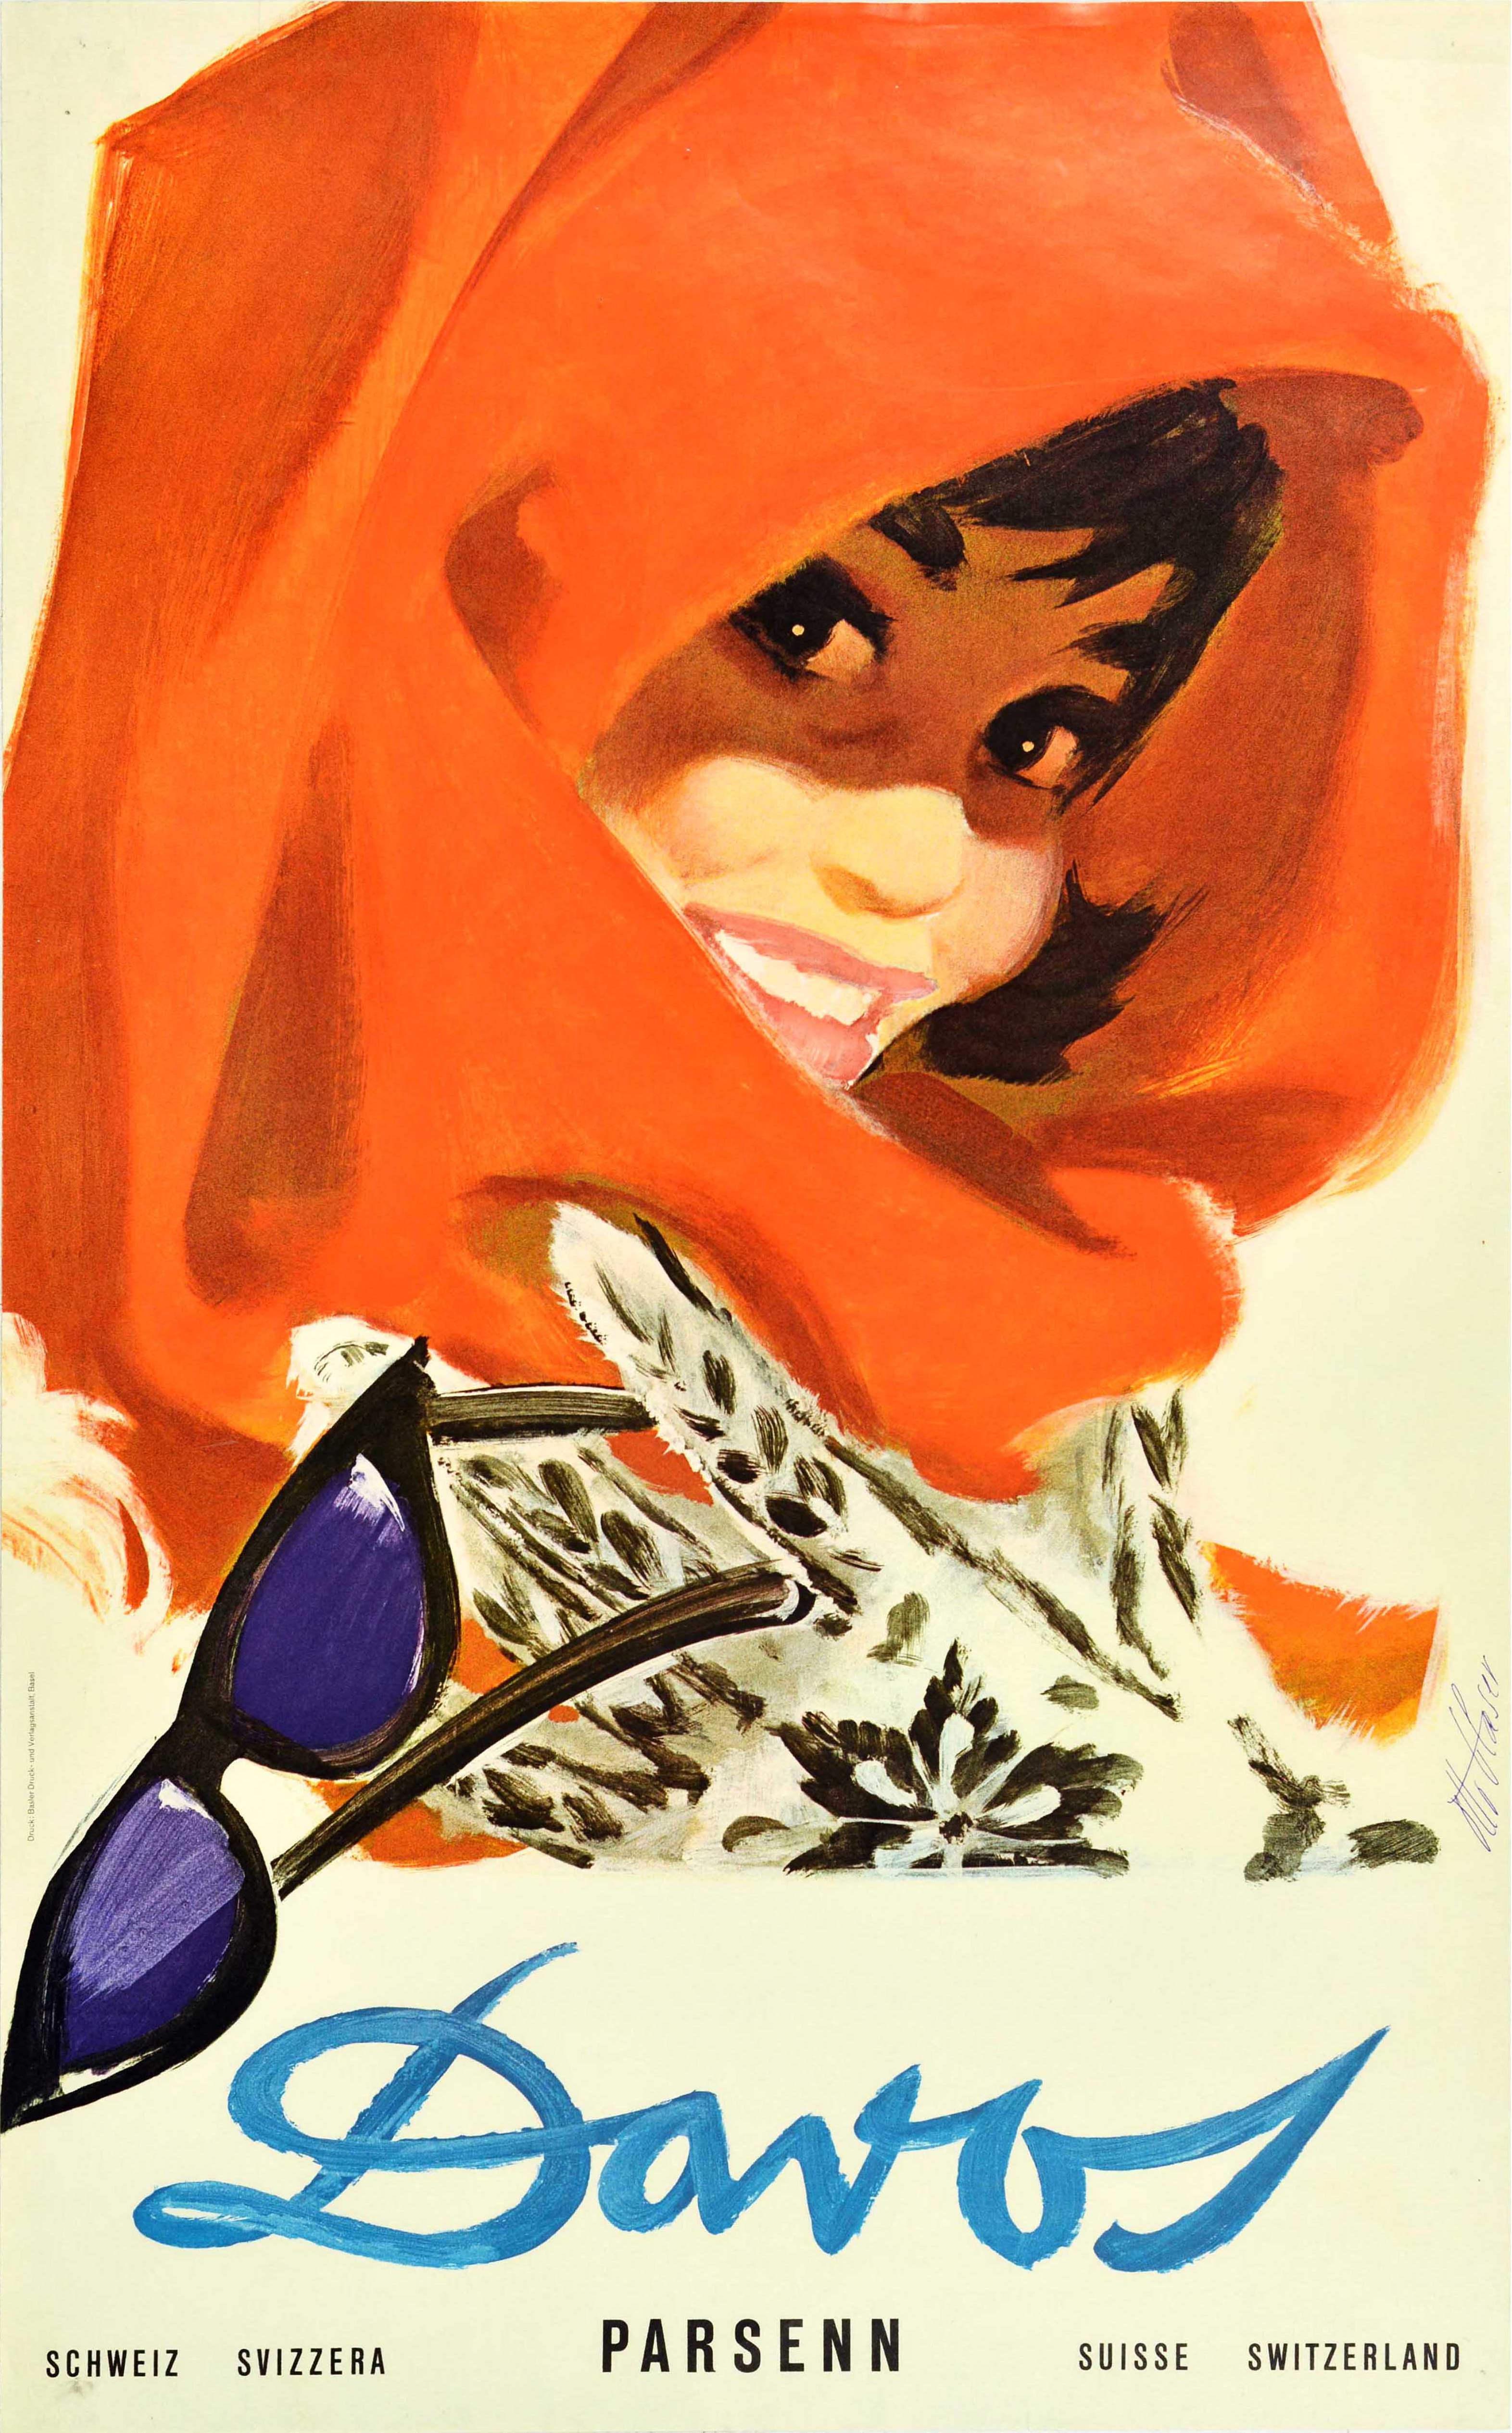 Original Reiseplakat für den beliebten Skiort Davos Parsenn in der Schweiz Schweiz Svizzera Suisse. Großartiges Kunstwerk des Schweizer Künstlers Otto Glaser (1915-1991), das eine Dame zeigt, die einen roten Schal über dem Kopf trägt und ein